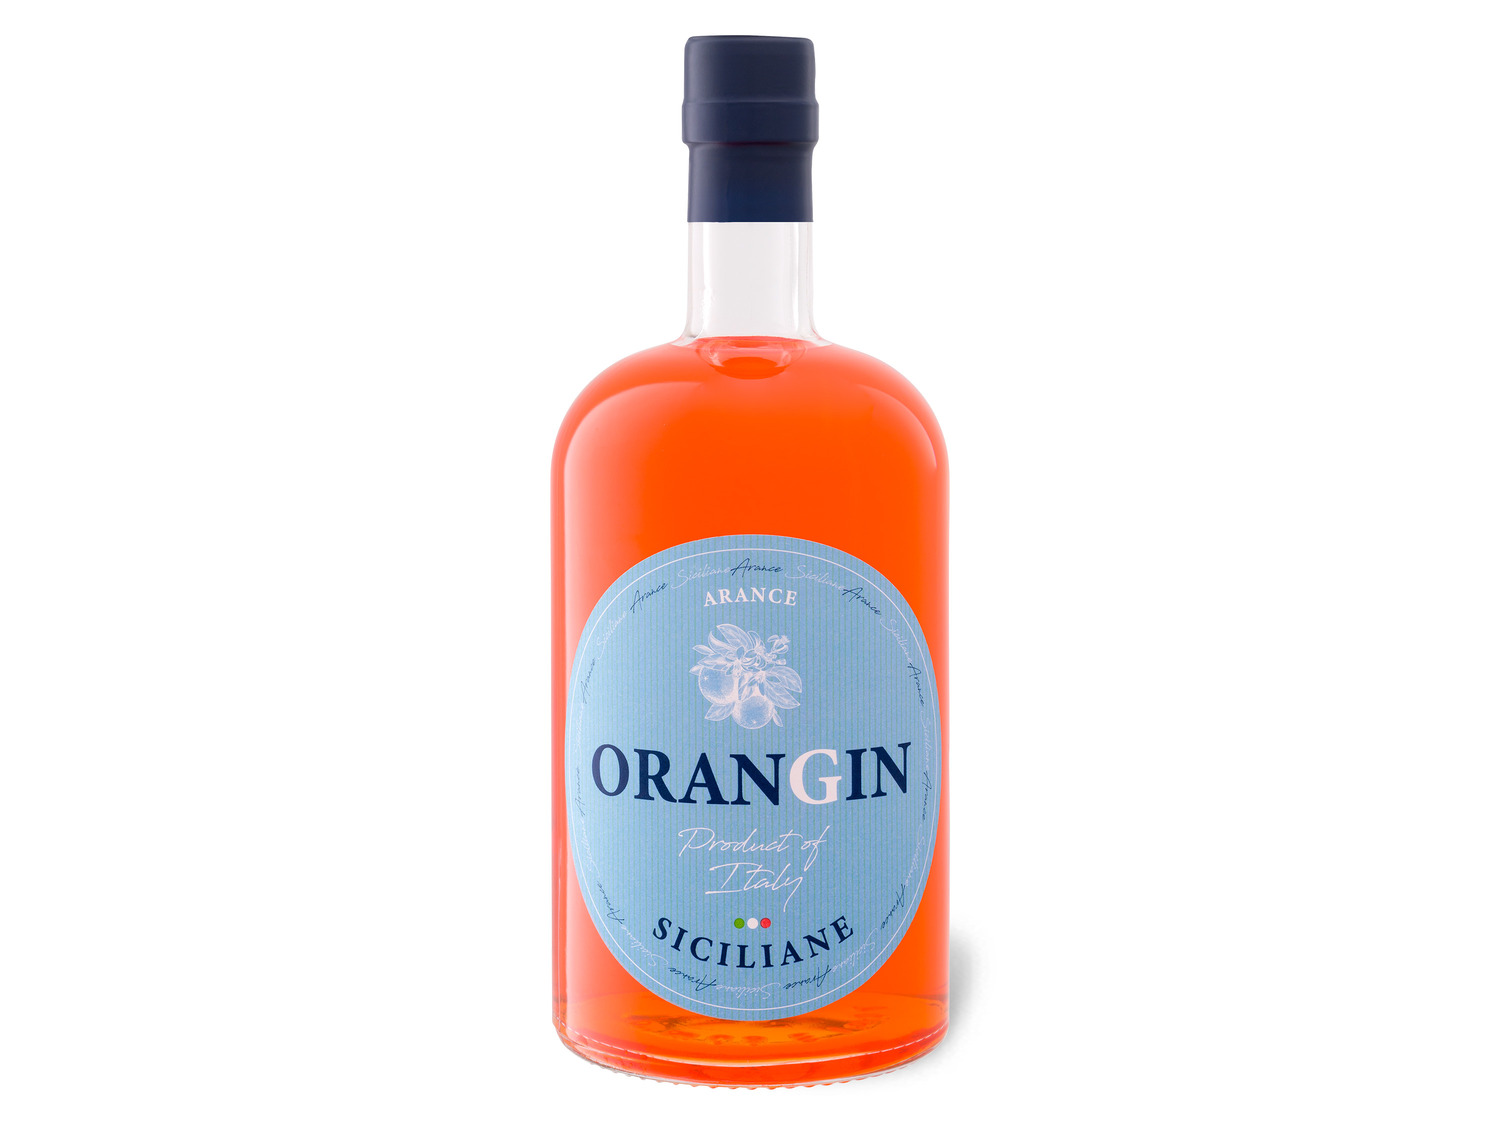 OranGin Siciliane 40% Vol LIDL | kaufen online